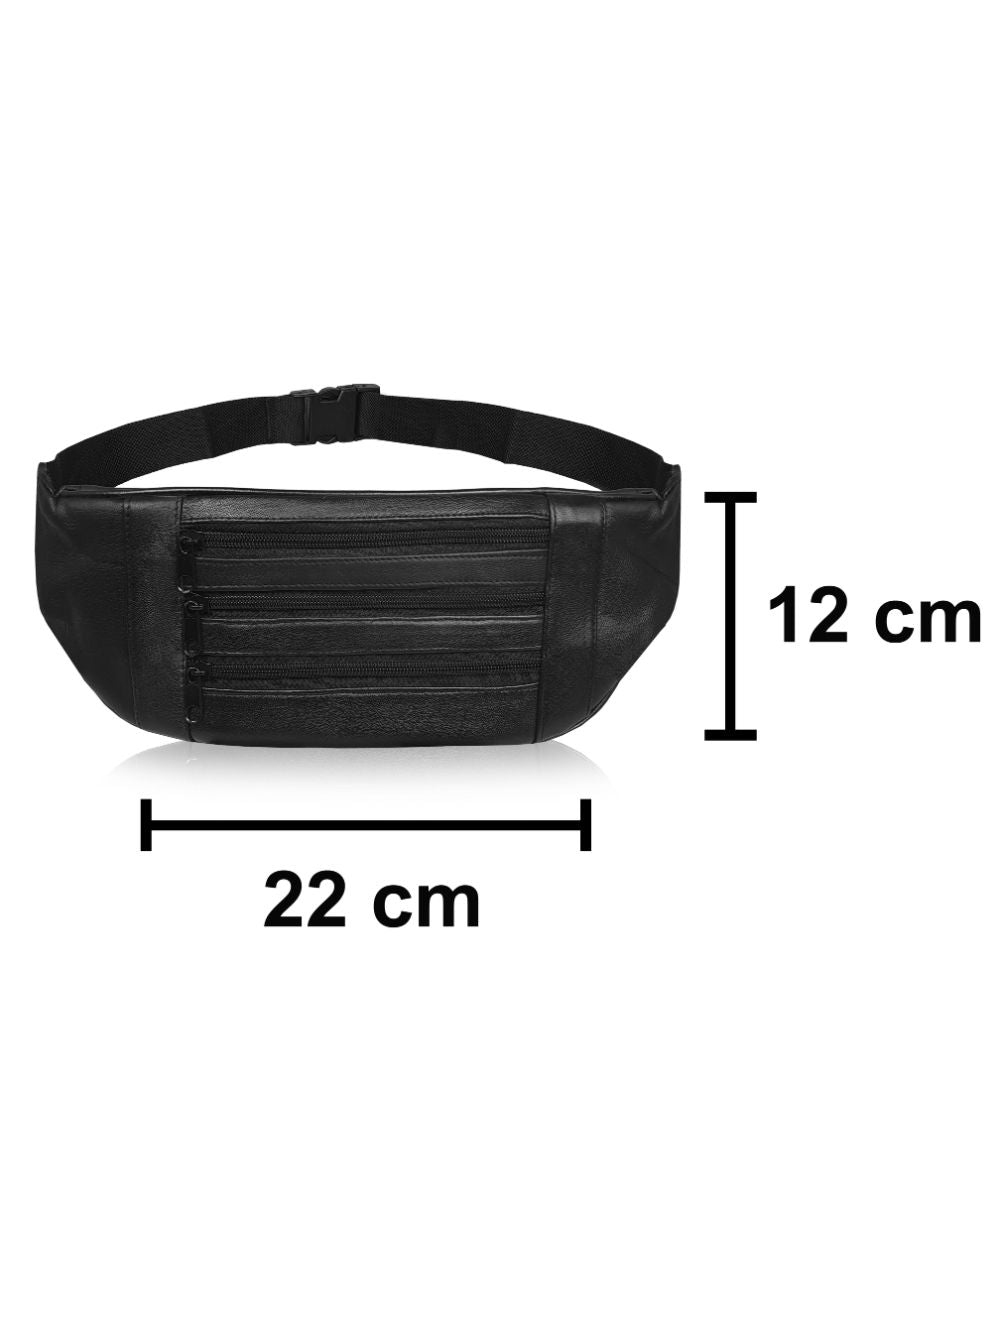 Roamlite Slim Bumbag Black Leather RL252 measurements 